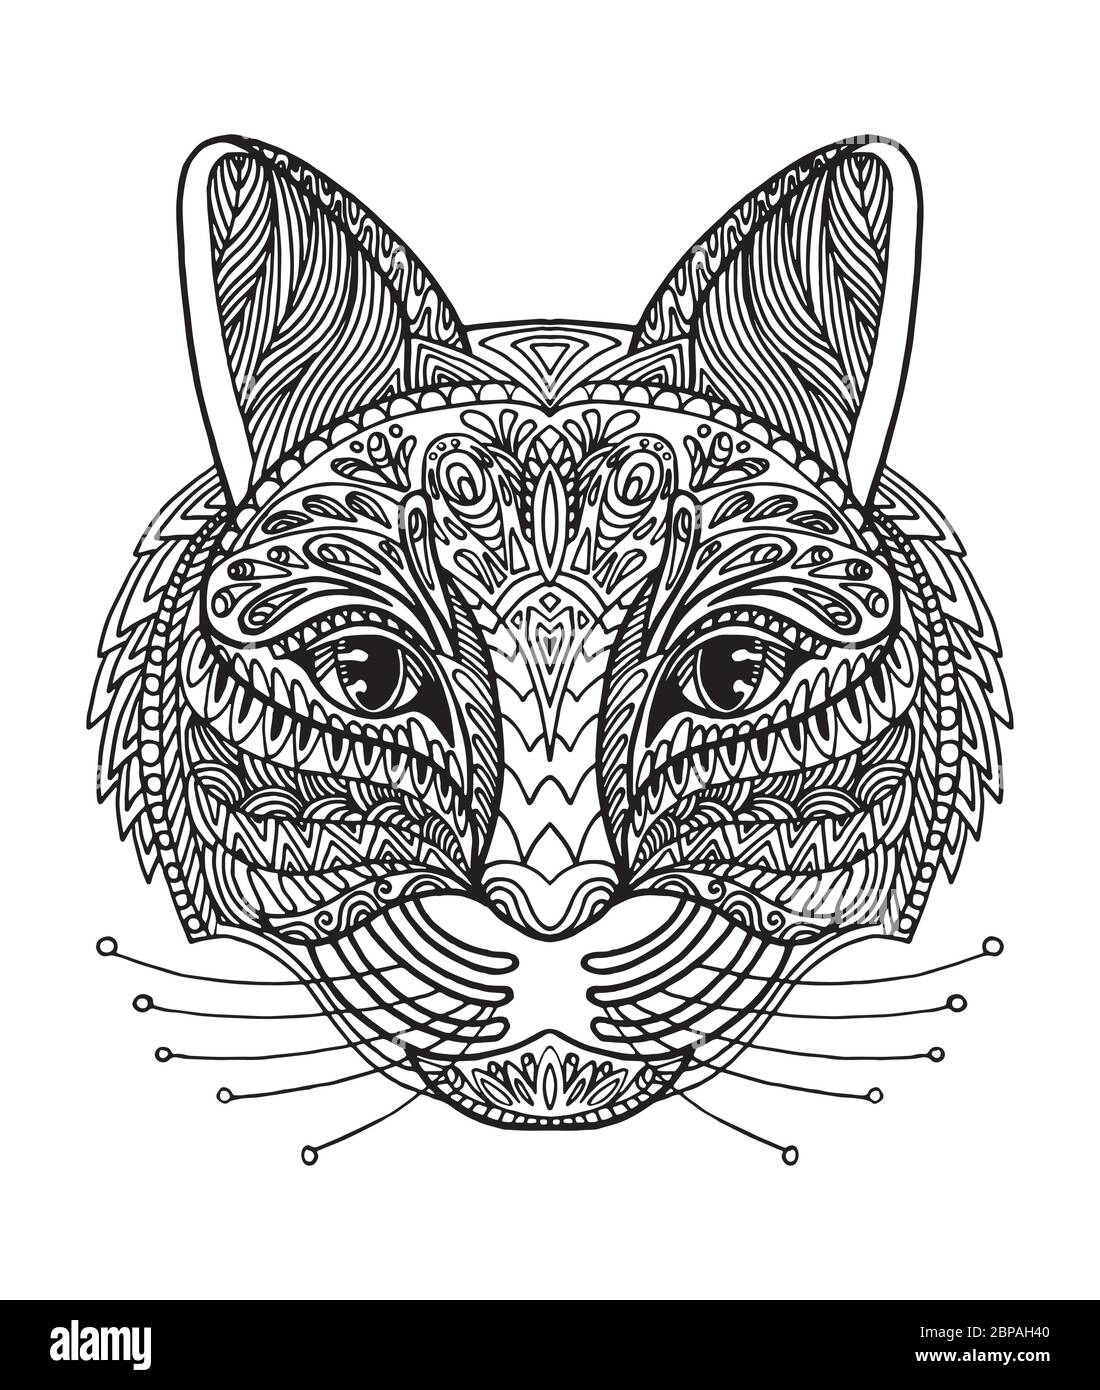 Vettore decorativo doodle testa ornamentale del gatto. Illustrazione vettoriale astratta del contorno nero del gatto isolato su sfondo bianco. Illustrazione del magazzino per Illustrazione Vettoriale